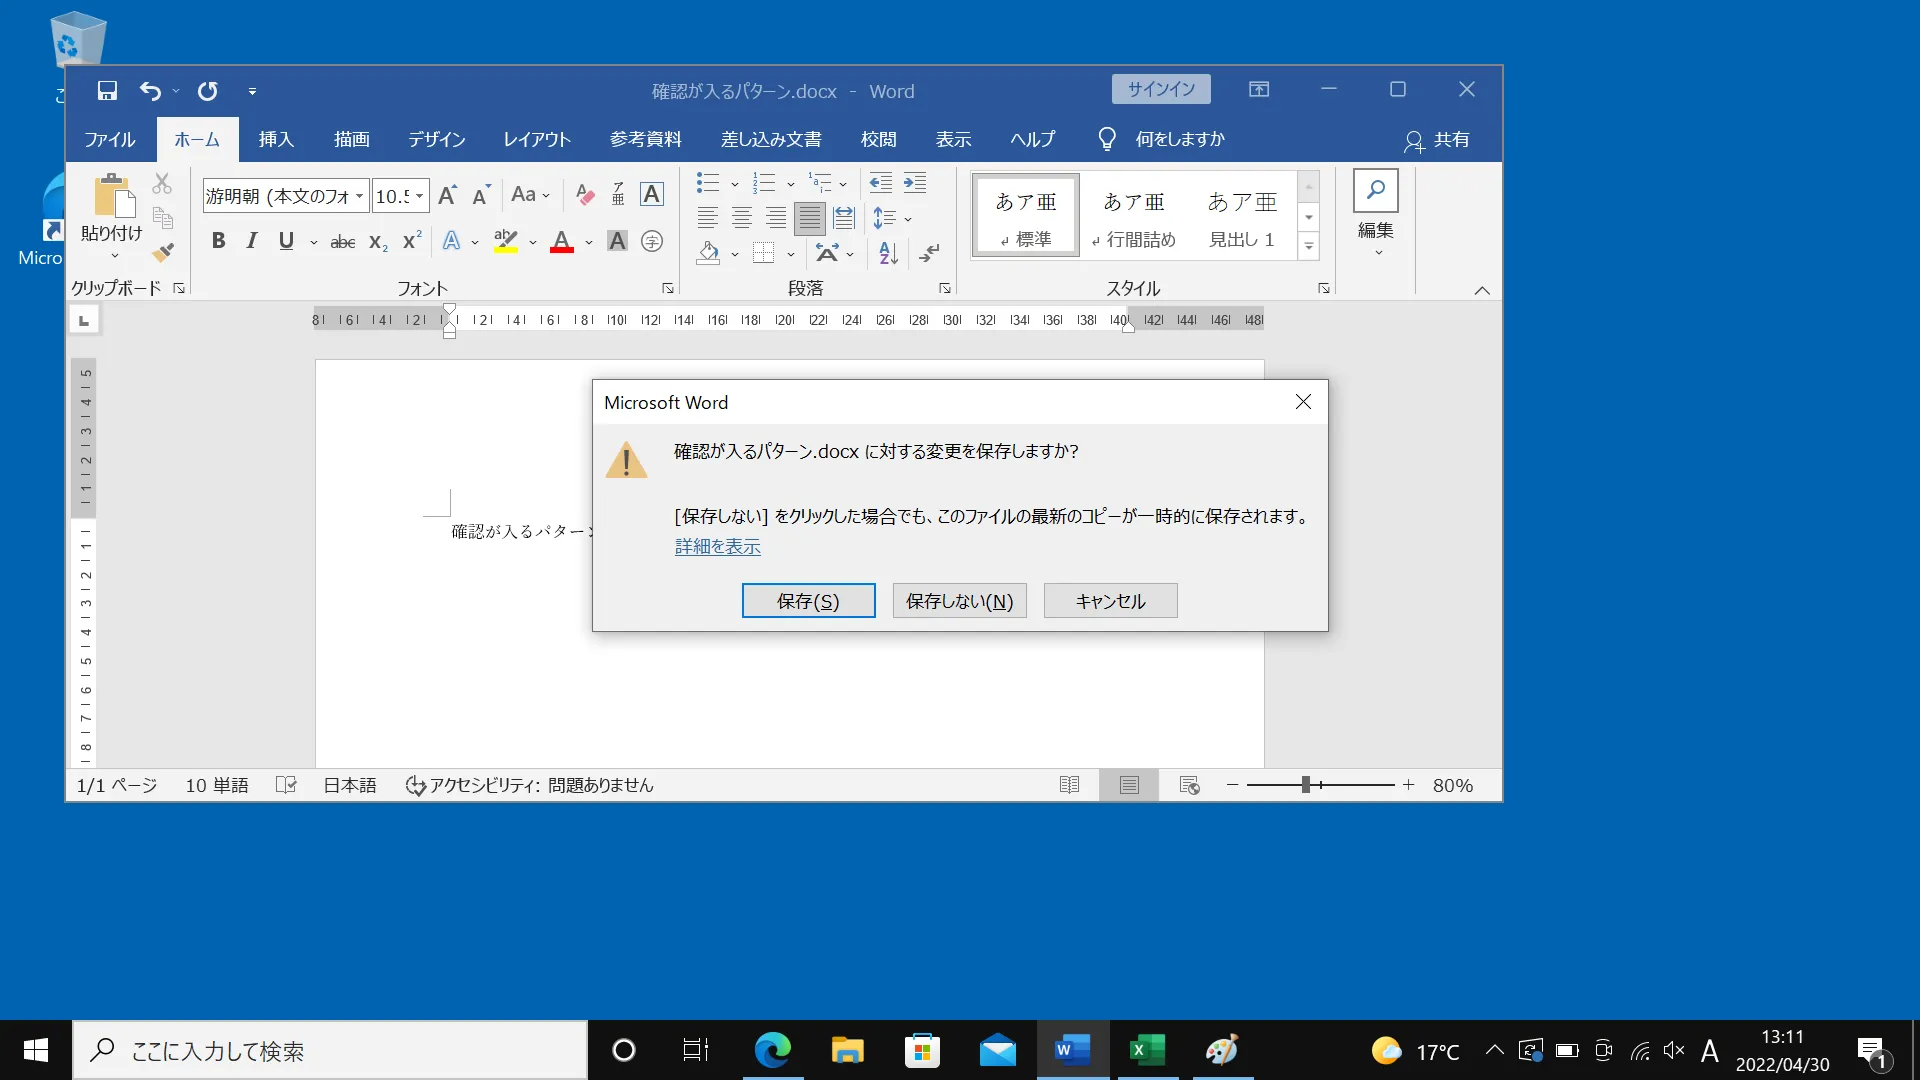 「Windowsキー」＋「M」も全部のウィンドウを最小化し、結果としてデスクトップが表示されるので、ほぼ同じ機能のショートカットキーです。